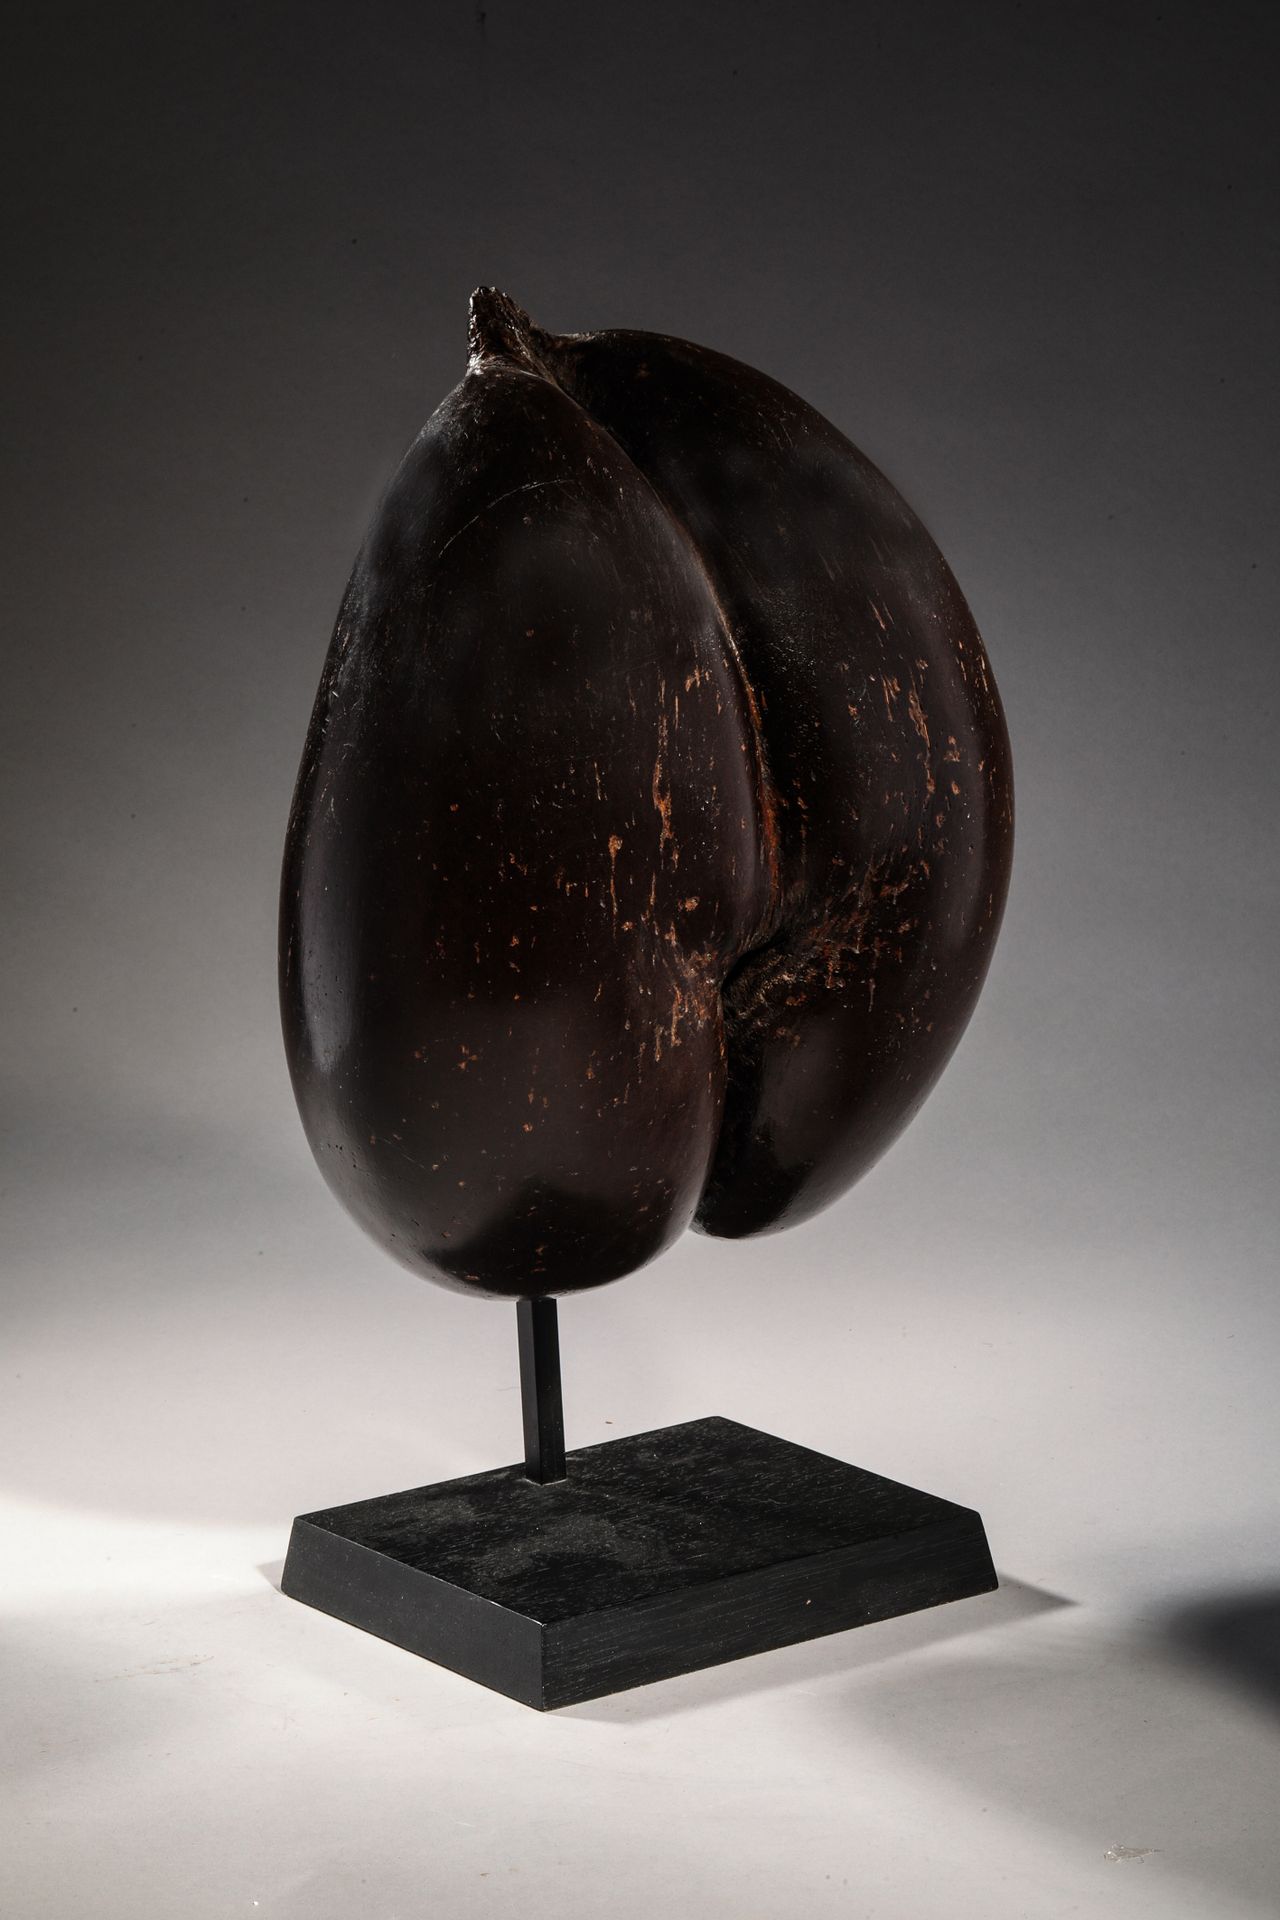 Null COCO-FESSE, Frucht der Seepalme.
Seychellen 20. Jahrhundert.
H. 32 cm